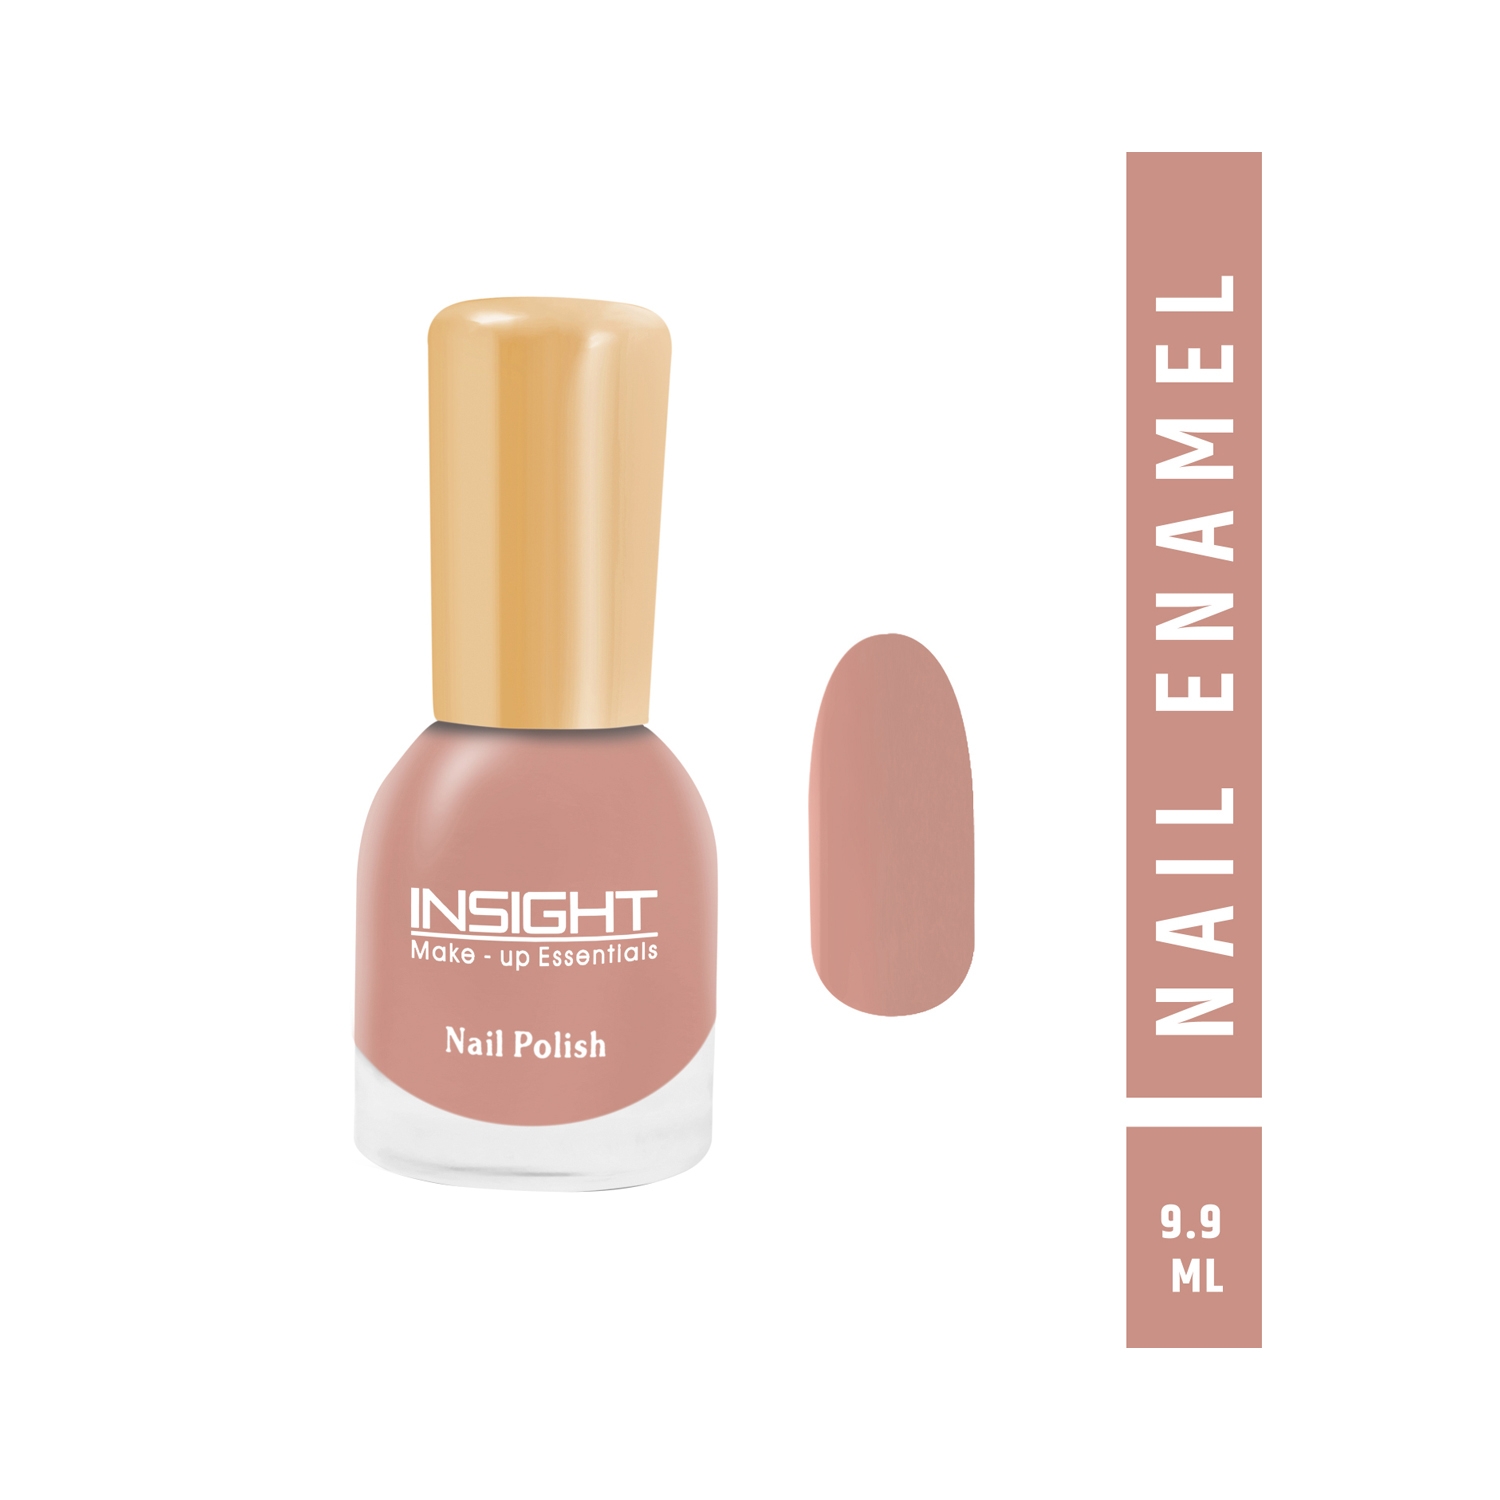 Insight Cosmetics | Insight Cosmetics Nail Polish - 53 Shade (9.9ml)